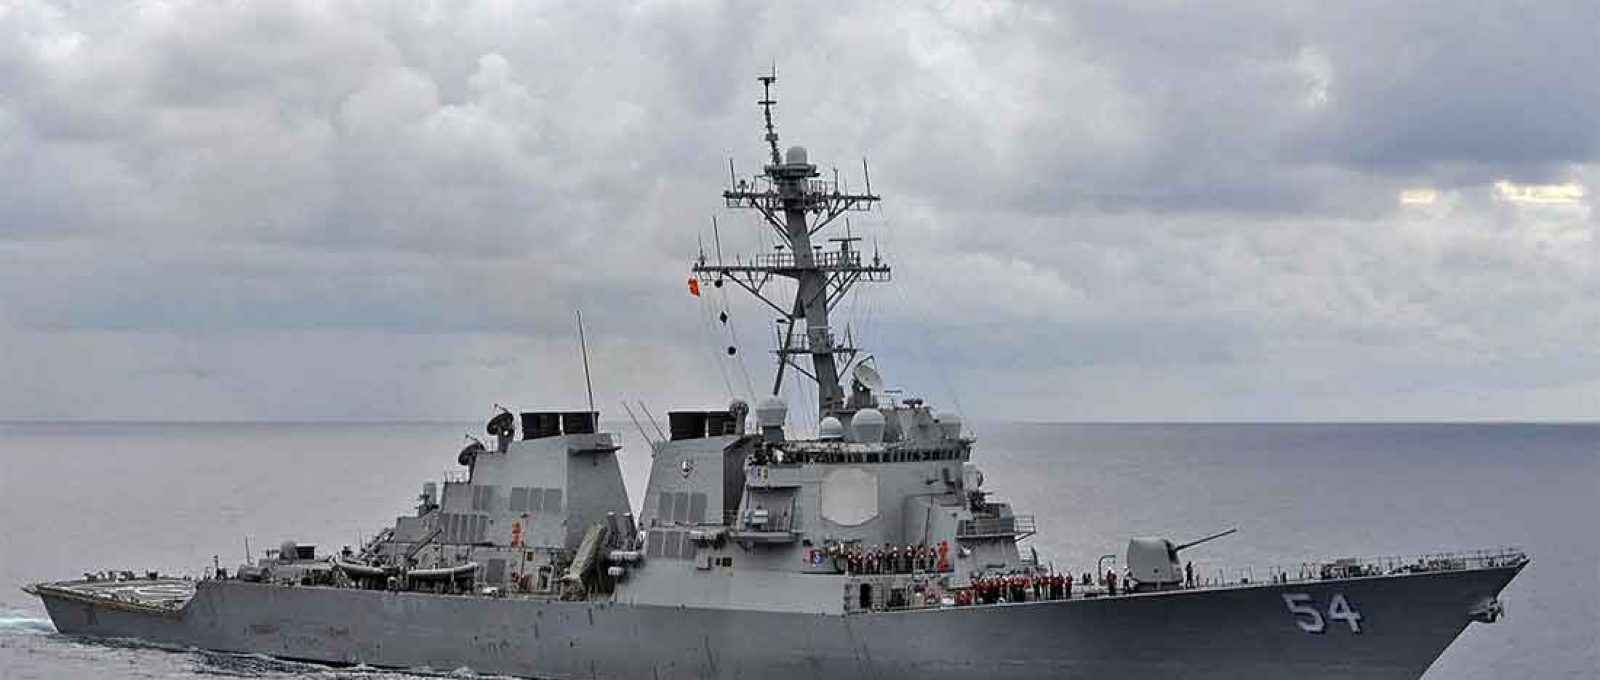 O destroier de mísseis guiados da US Navy USS Curtis Wilbur no mar das Filipinas em agosto de 2013 (Foto: Declan Barnes/US Navy).